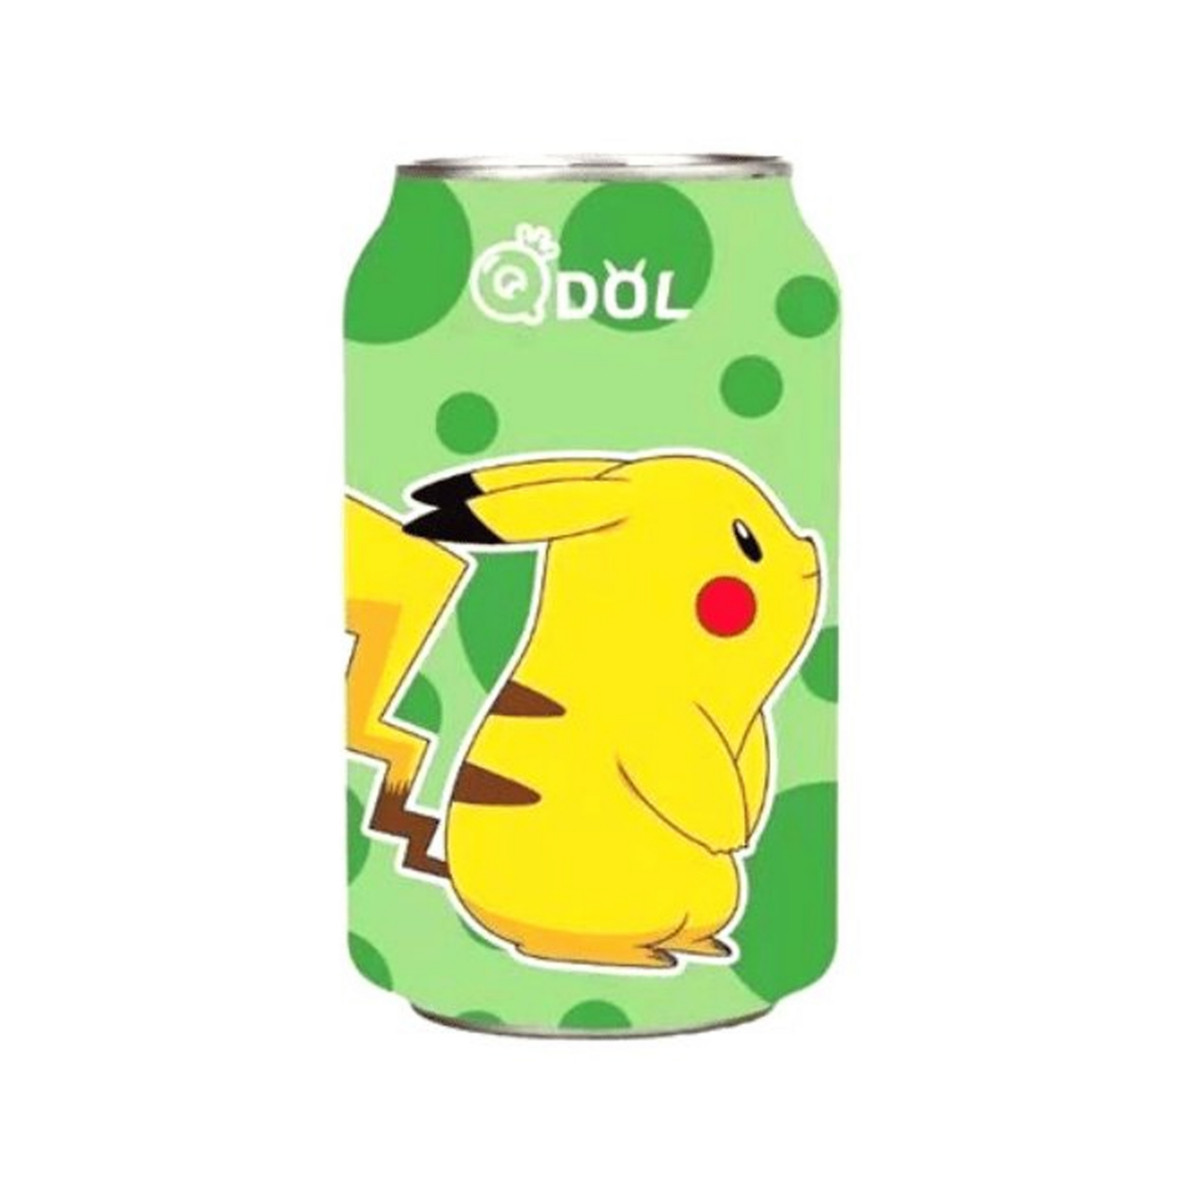 Refrigerante Gaseificado Pokemon Pikachu Sabor Limão - 330mL